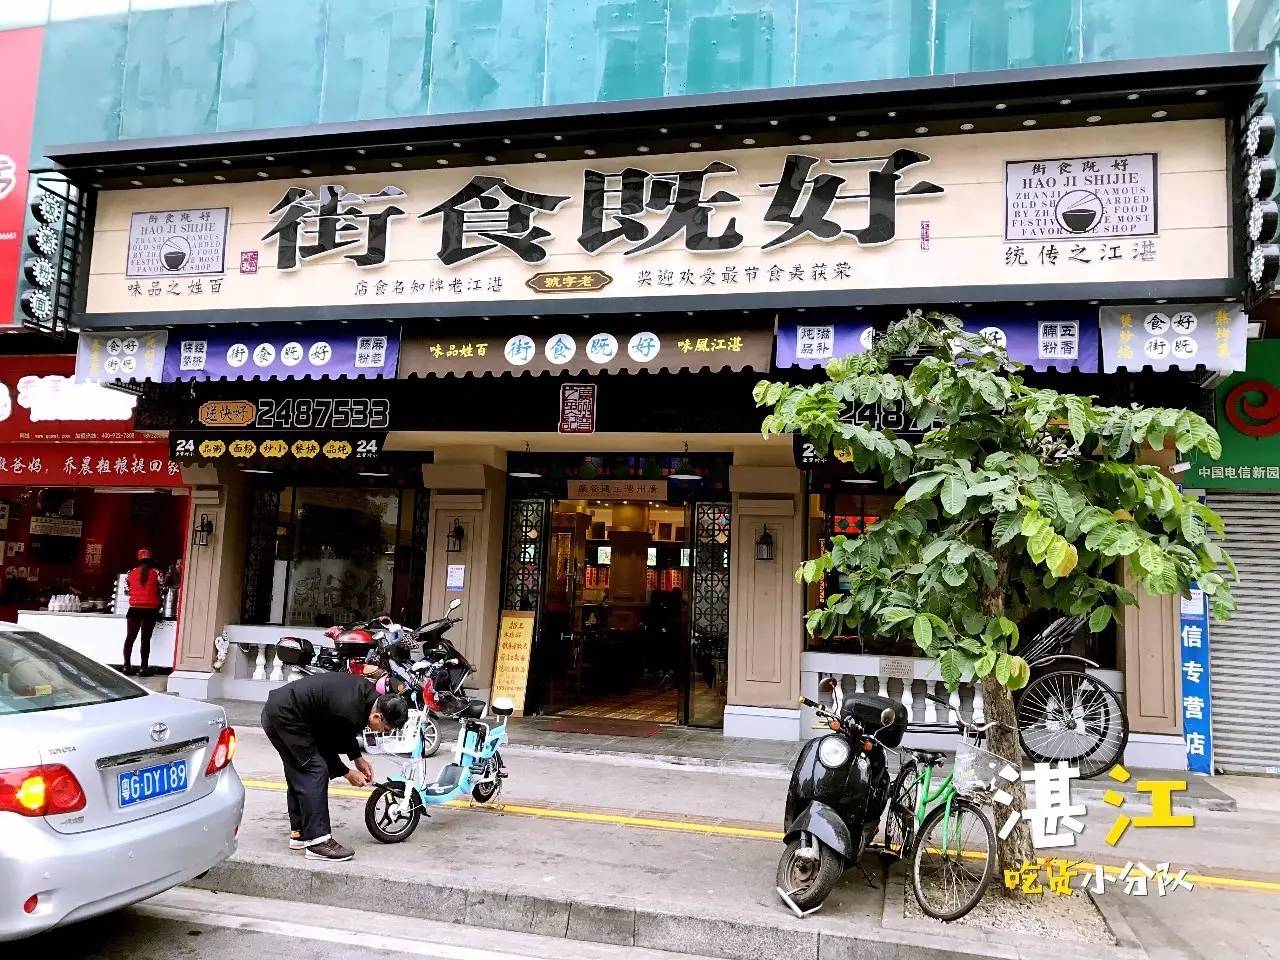 在湛江,只有这些早餐店能让我起床!(下集)